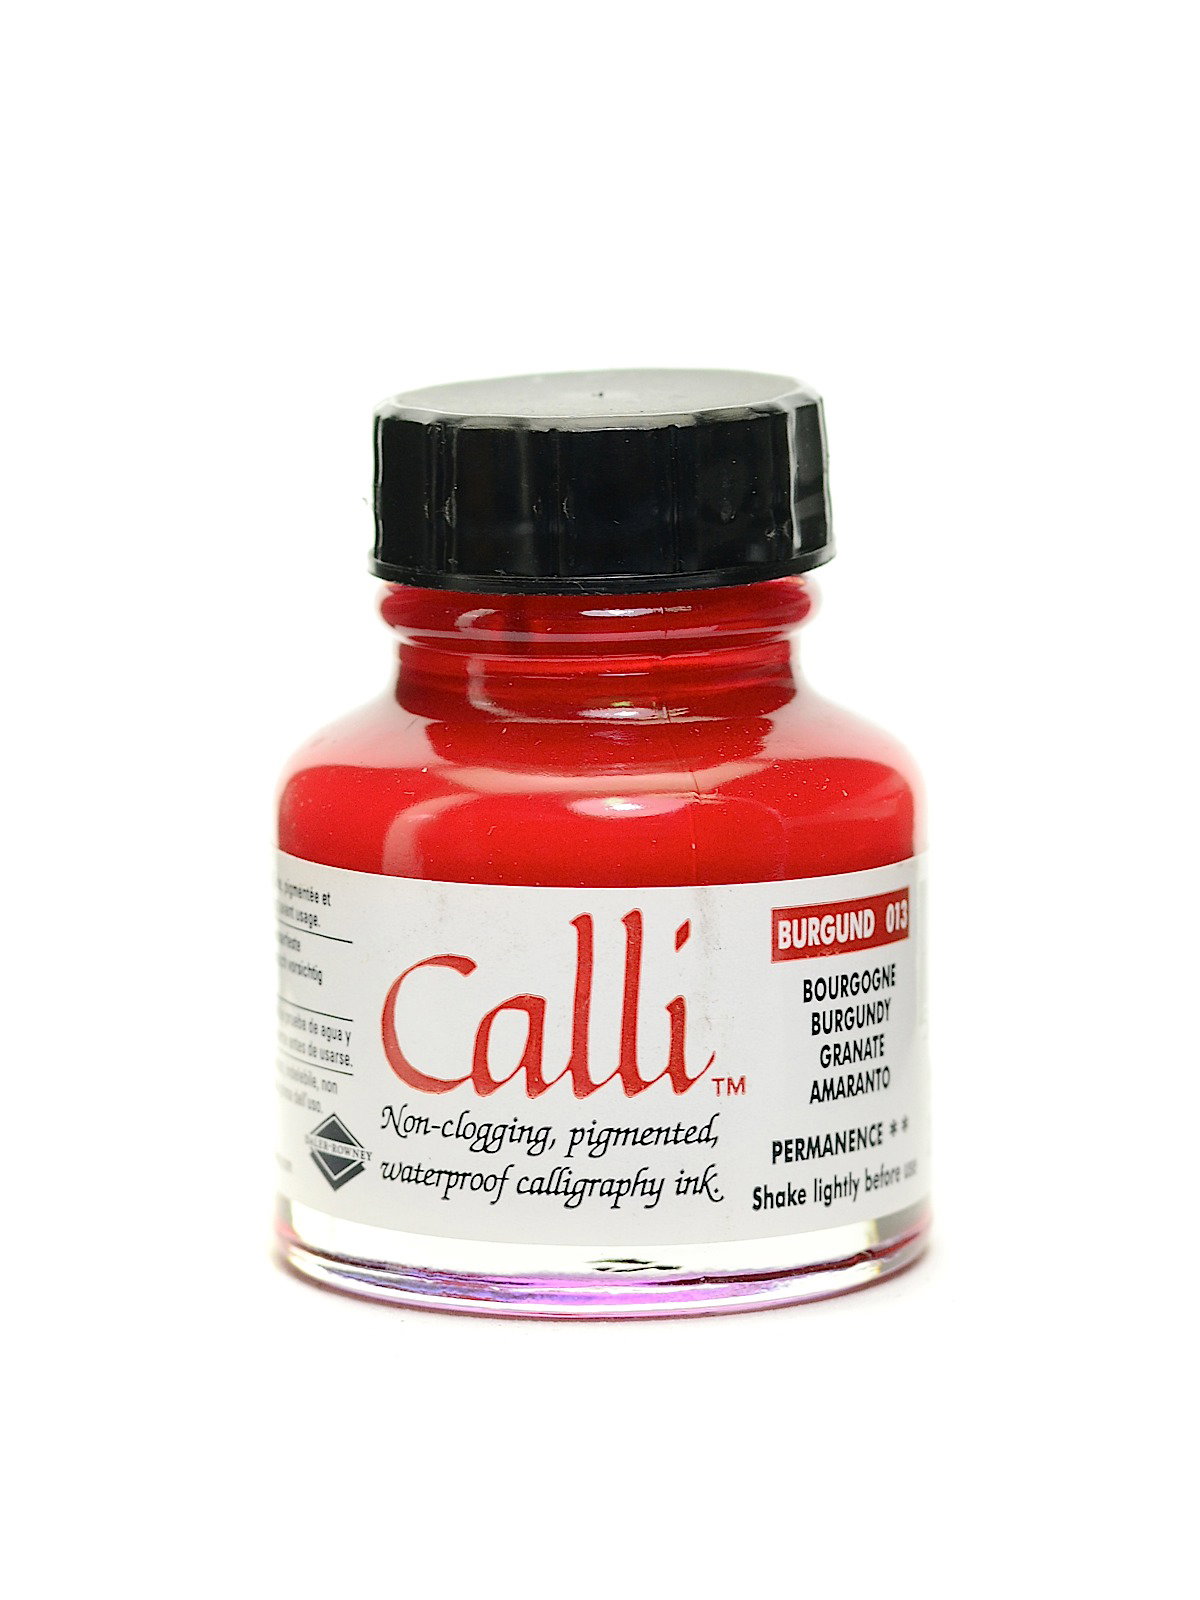  Daler Rowney Calli Ink Set, Multicolor